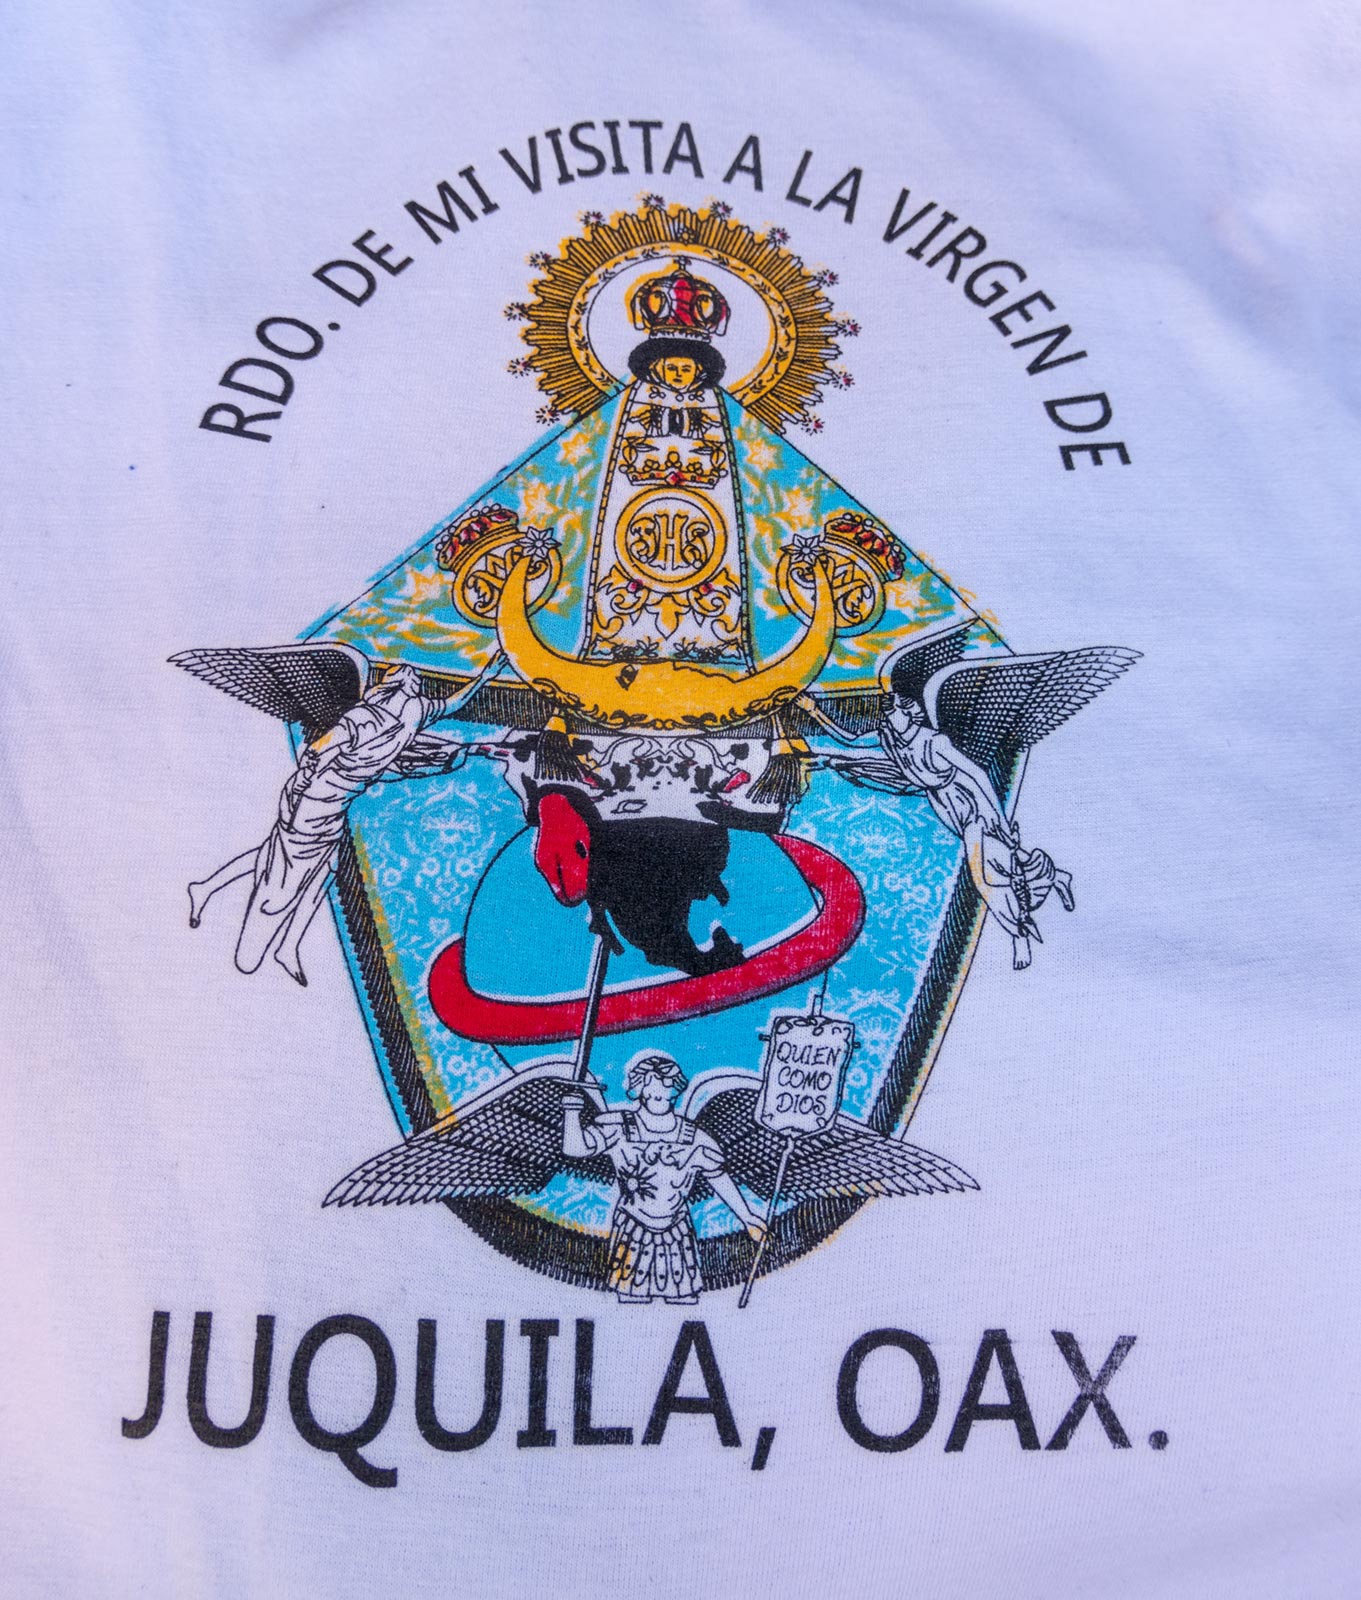 Afbeelding van een wonderbaarlijk beeld van de Maagd Maria op t-shirt, te koop op de markt in de buurt van de kerk van de Maagd Maria, Juquila